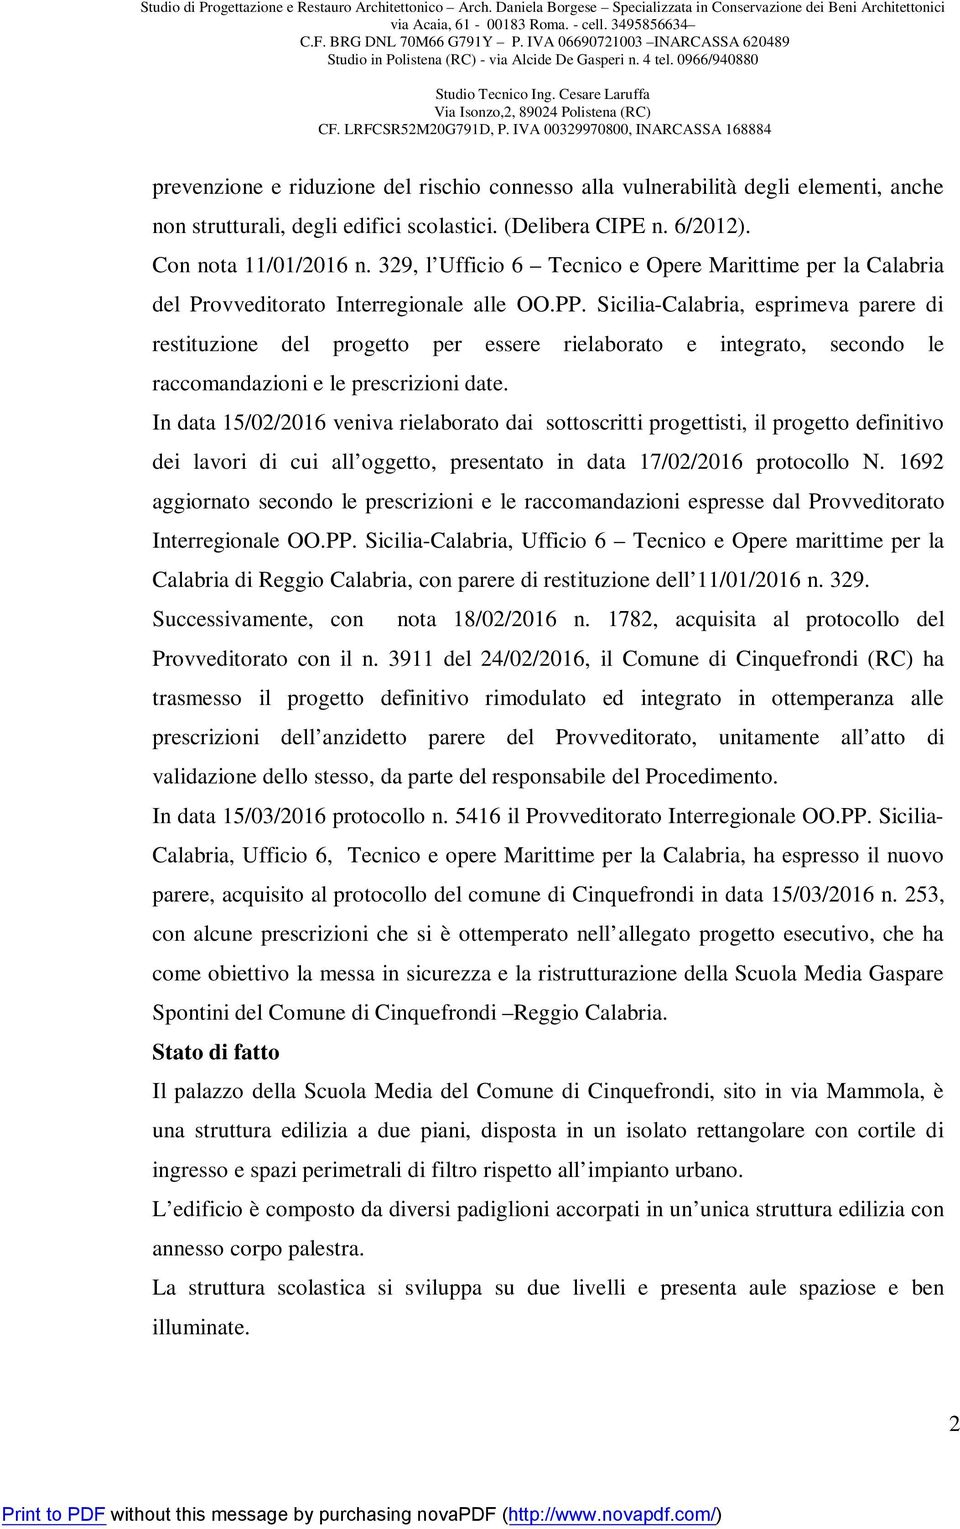 Sicilia-Calabria, esprimeva parere restituzione del progetto per essere rielaborato e integrato, secondo le raccomandazioni e le prescrizioni date.